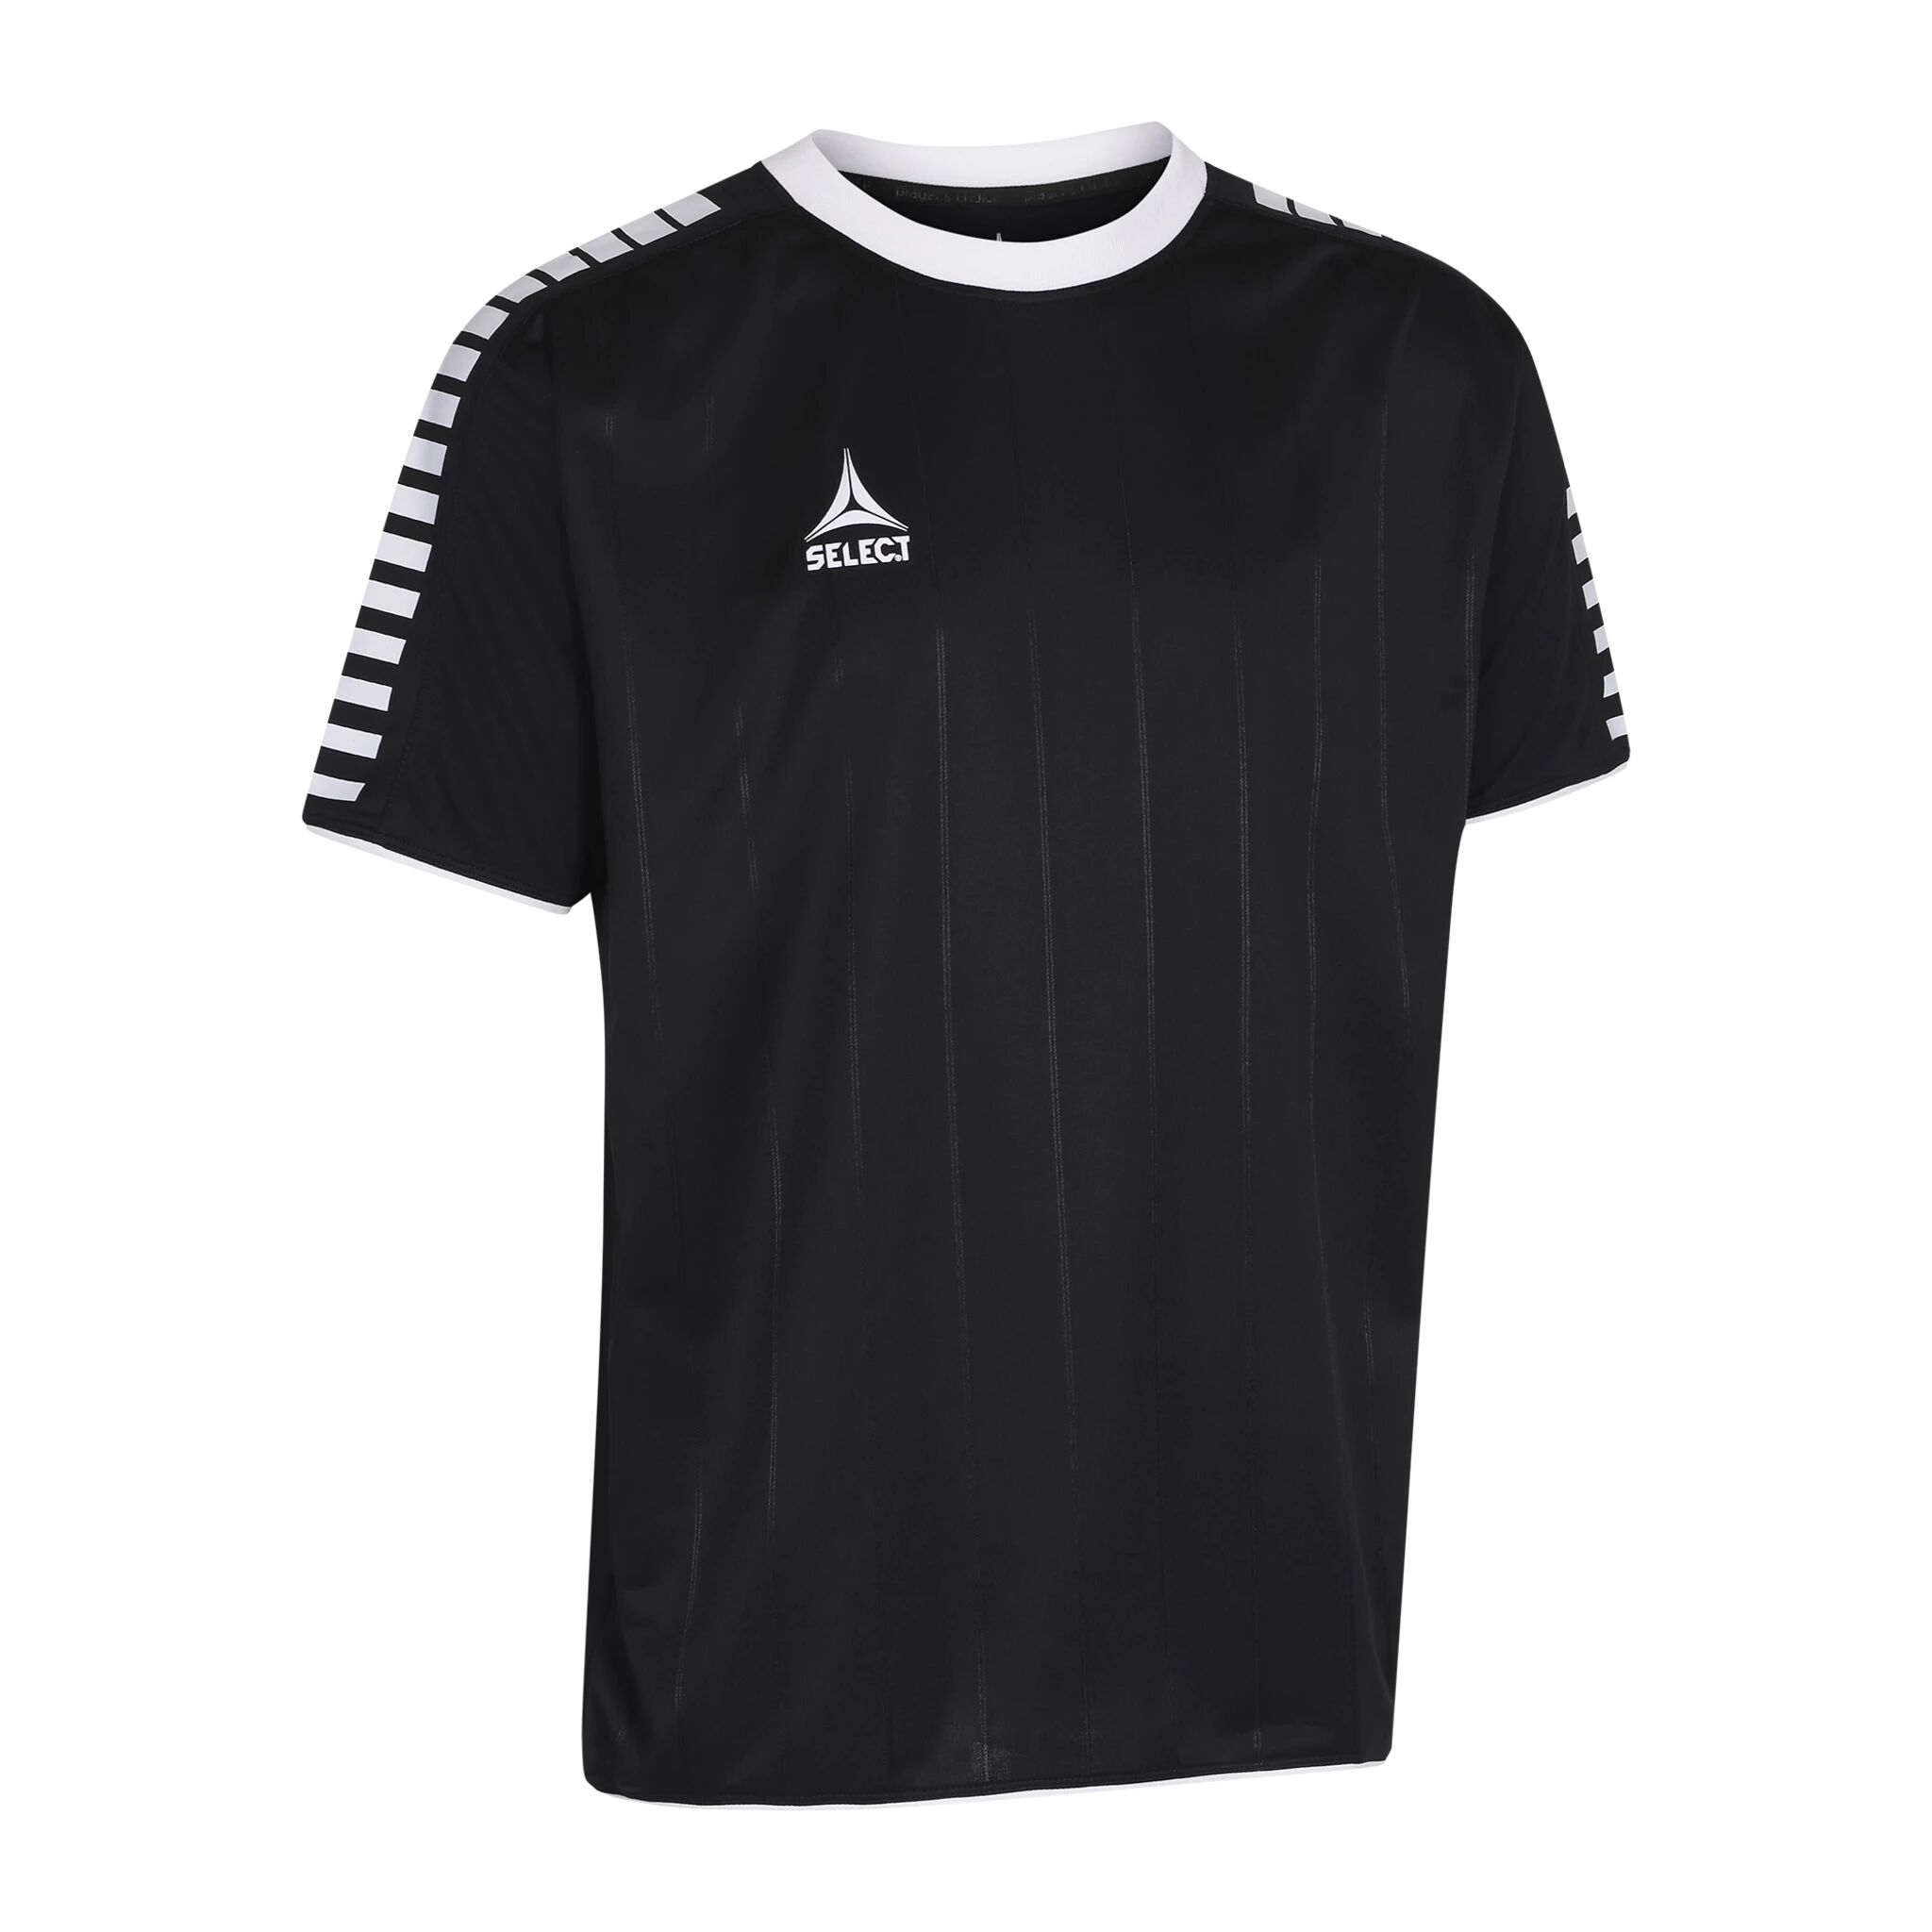 Select Player shirt S/S Argentina, fotballtrøye senior 164 BLACK